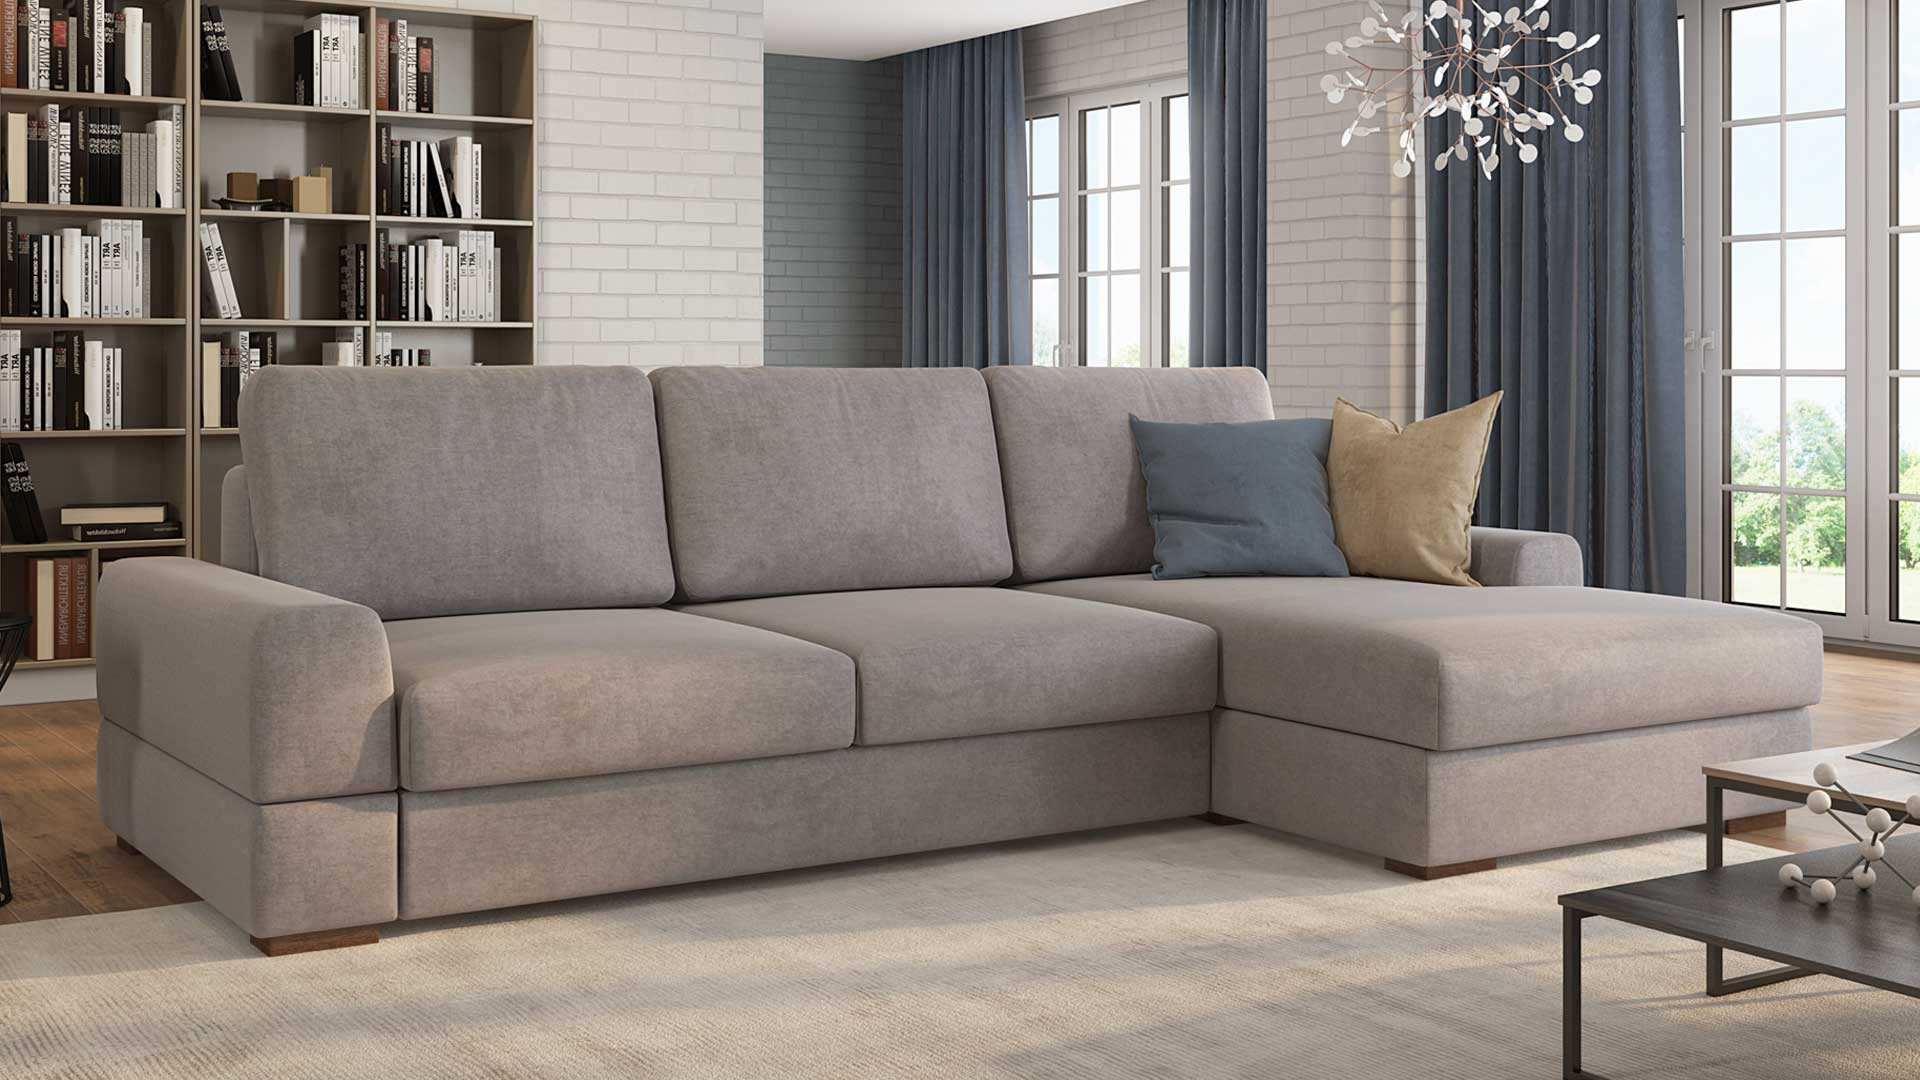 В «Доме диванов» большой выбор мягкой мебели на любой вкус